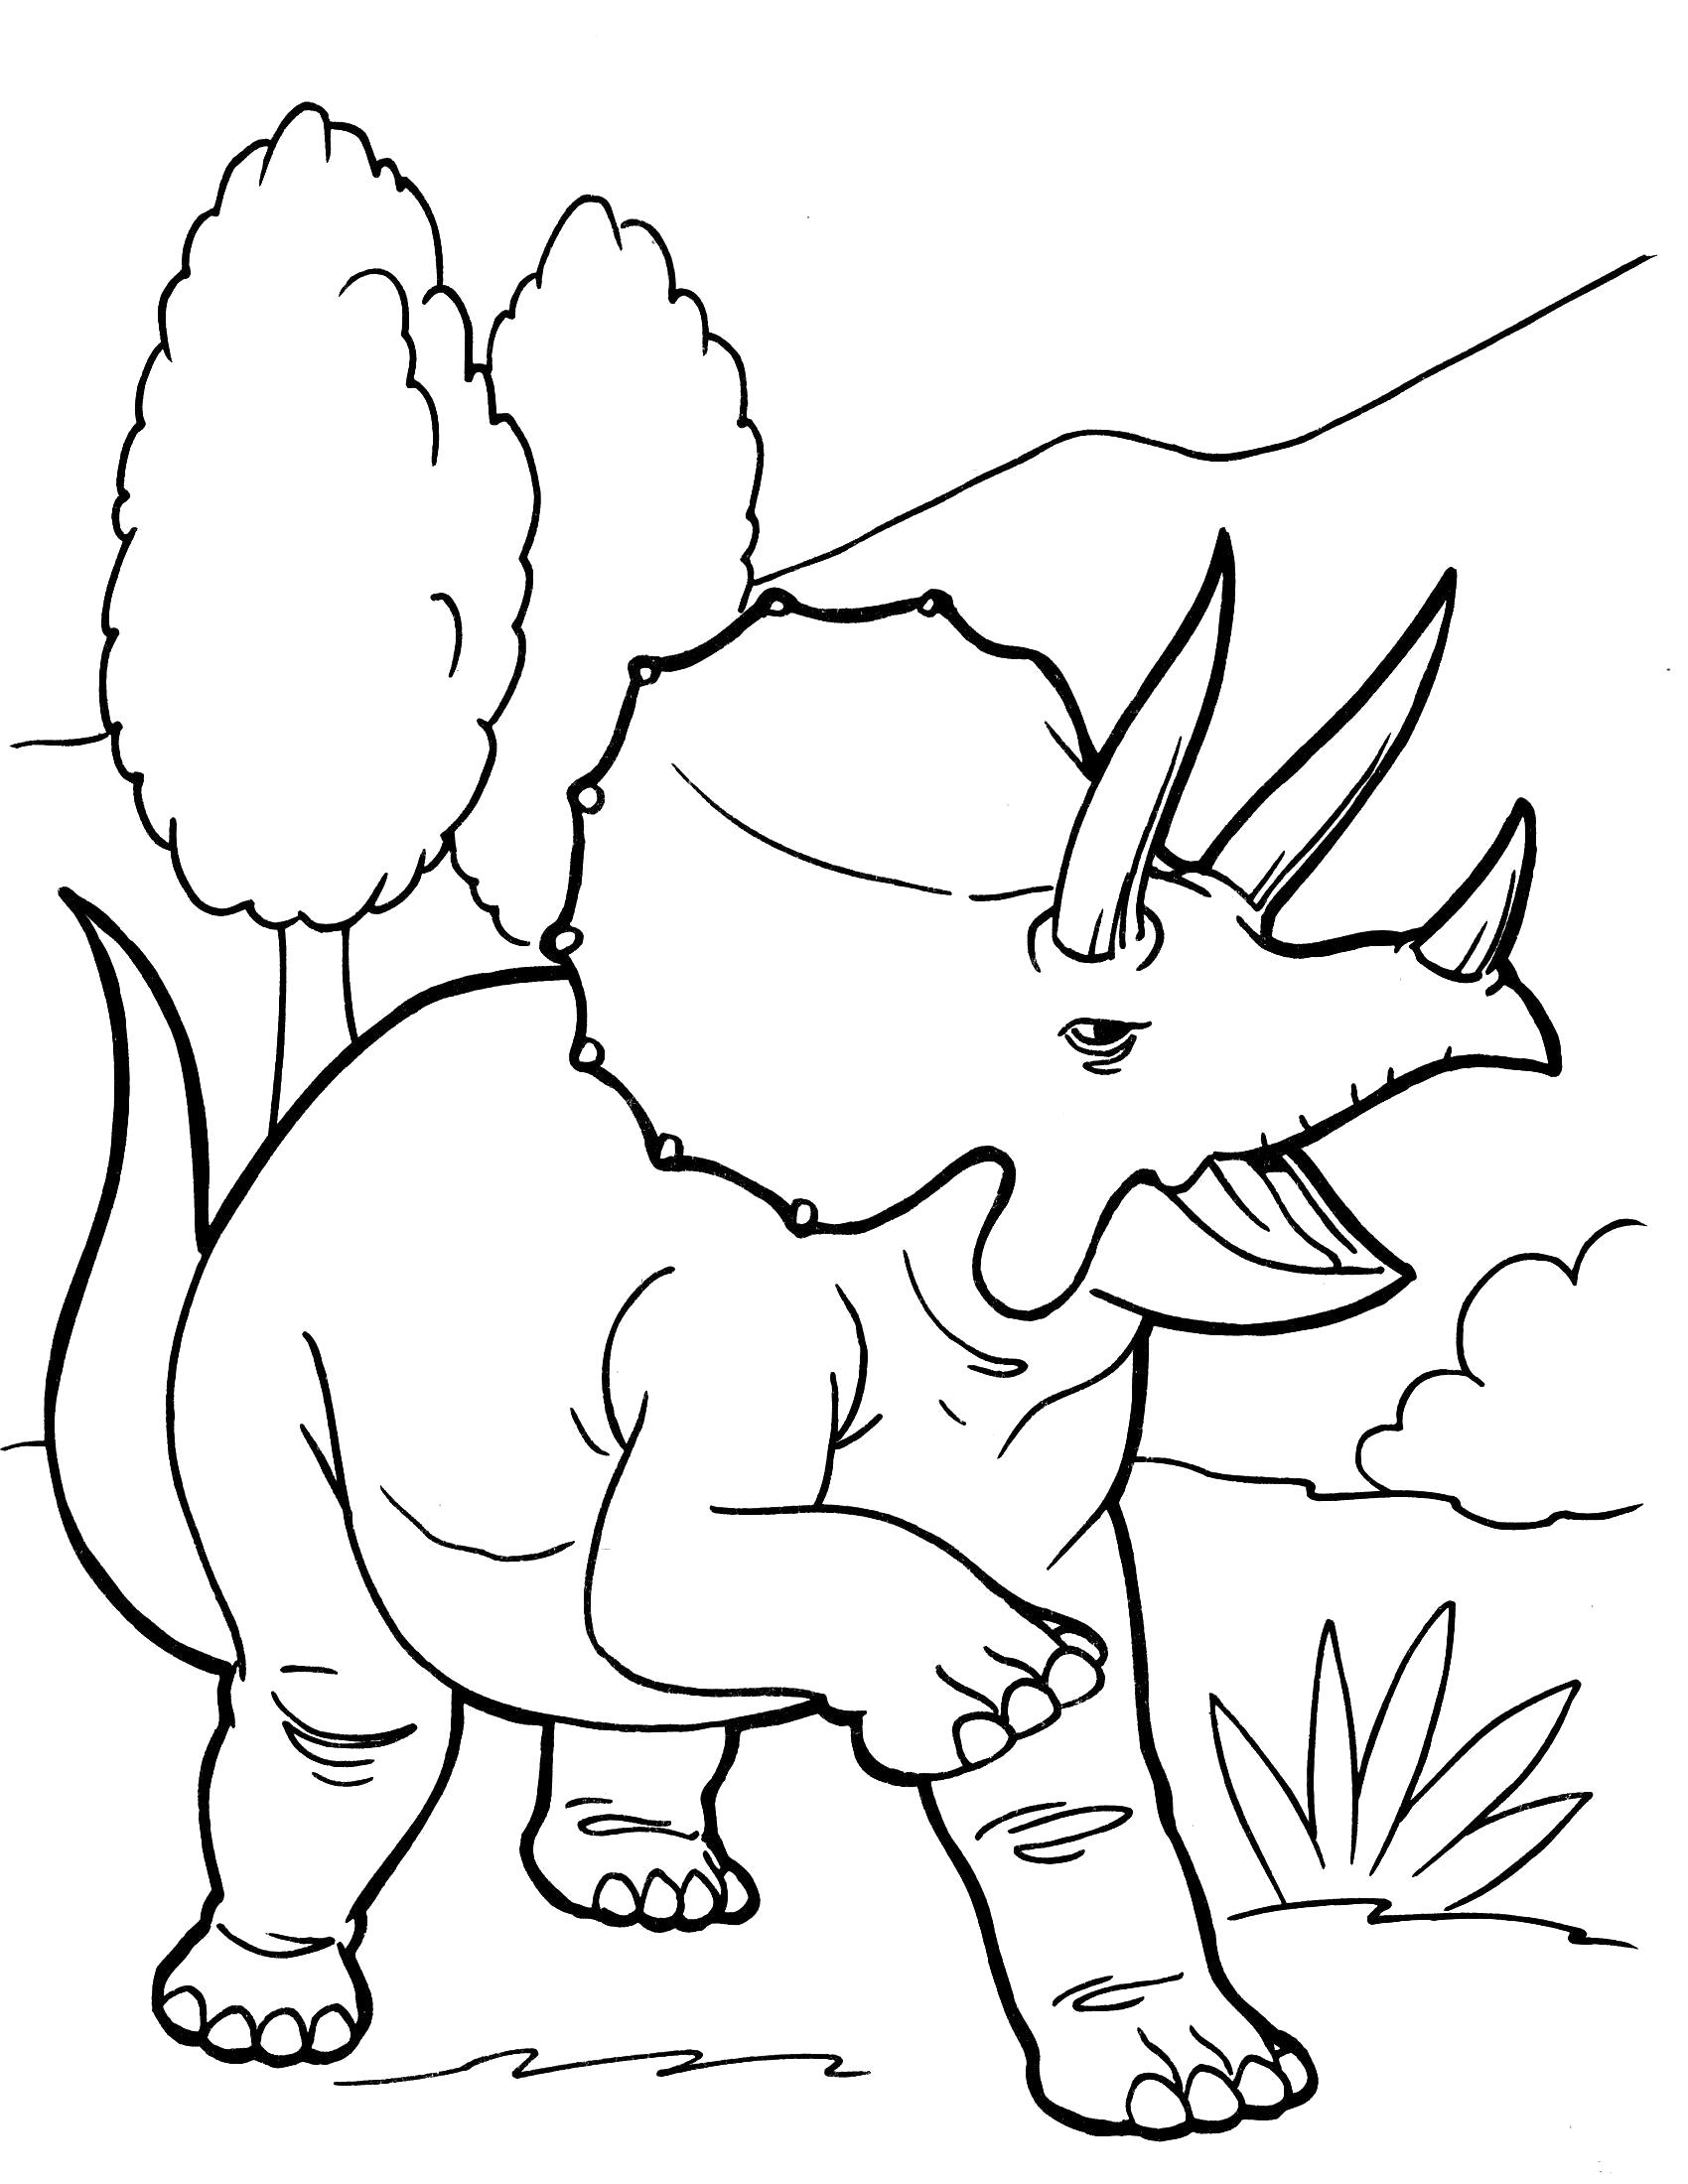 Раскраска Трицератопс. динозавр